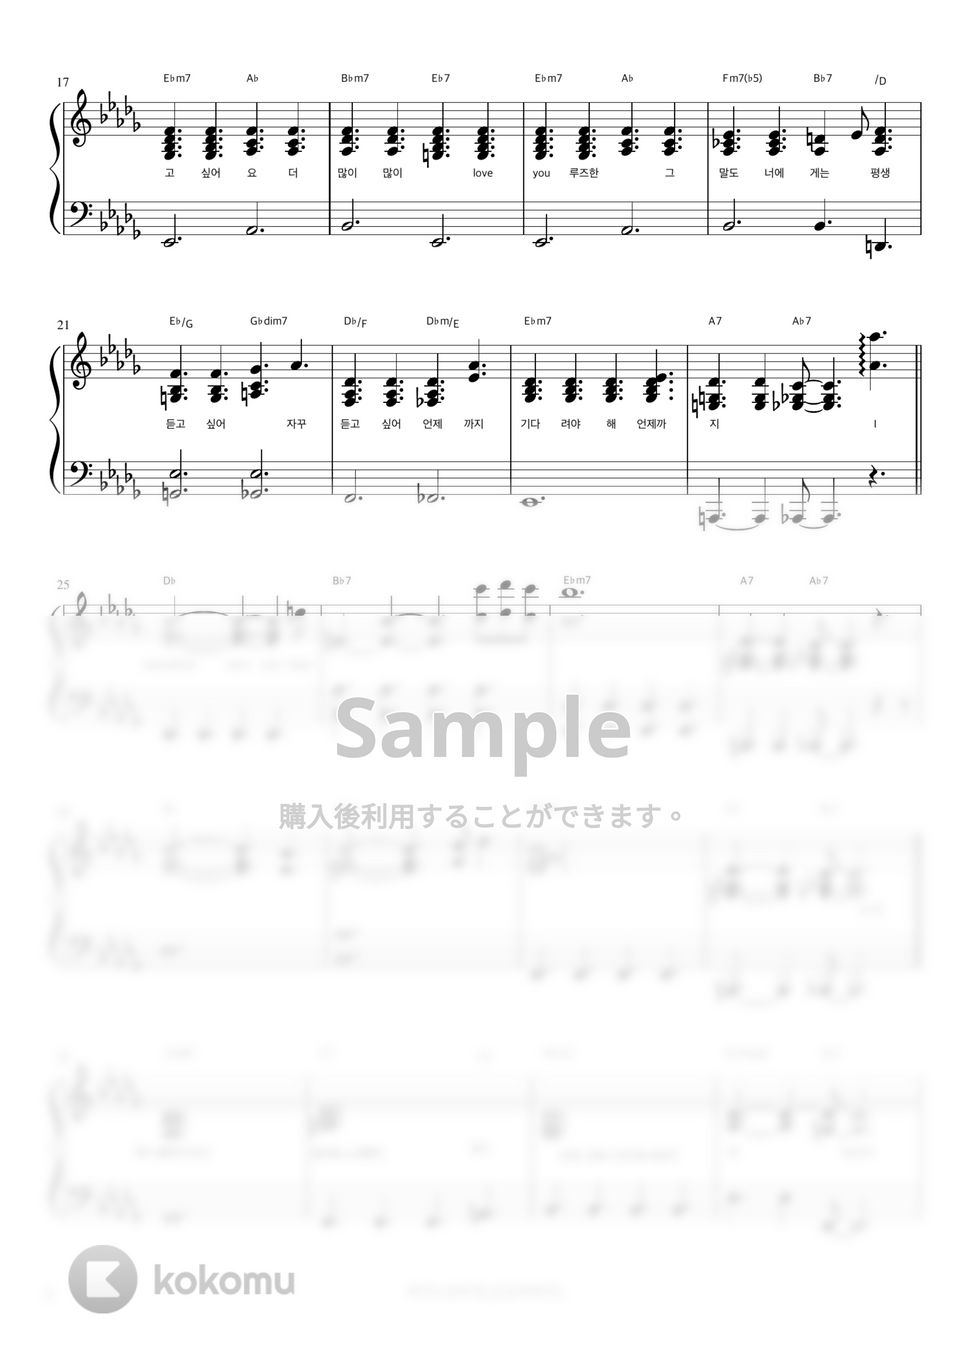 ソヌ・ジョンア - 求愛 (伴奏楽譜) by 피아노정류장